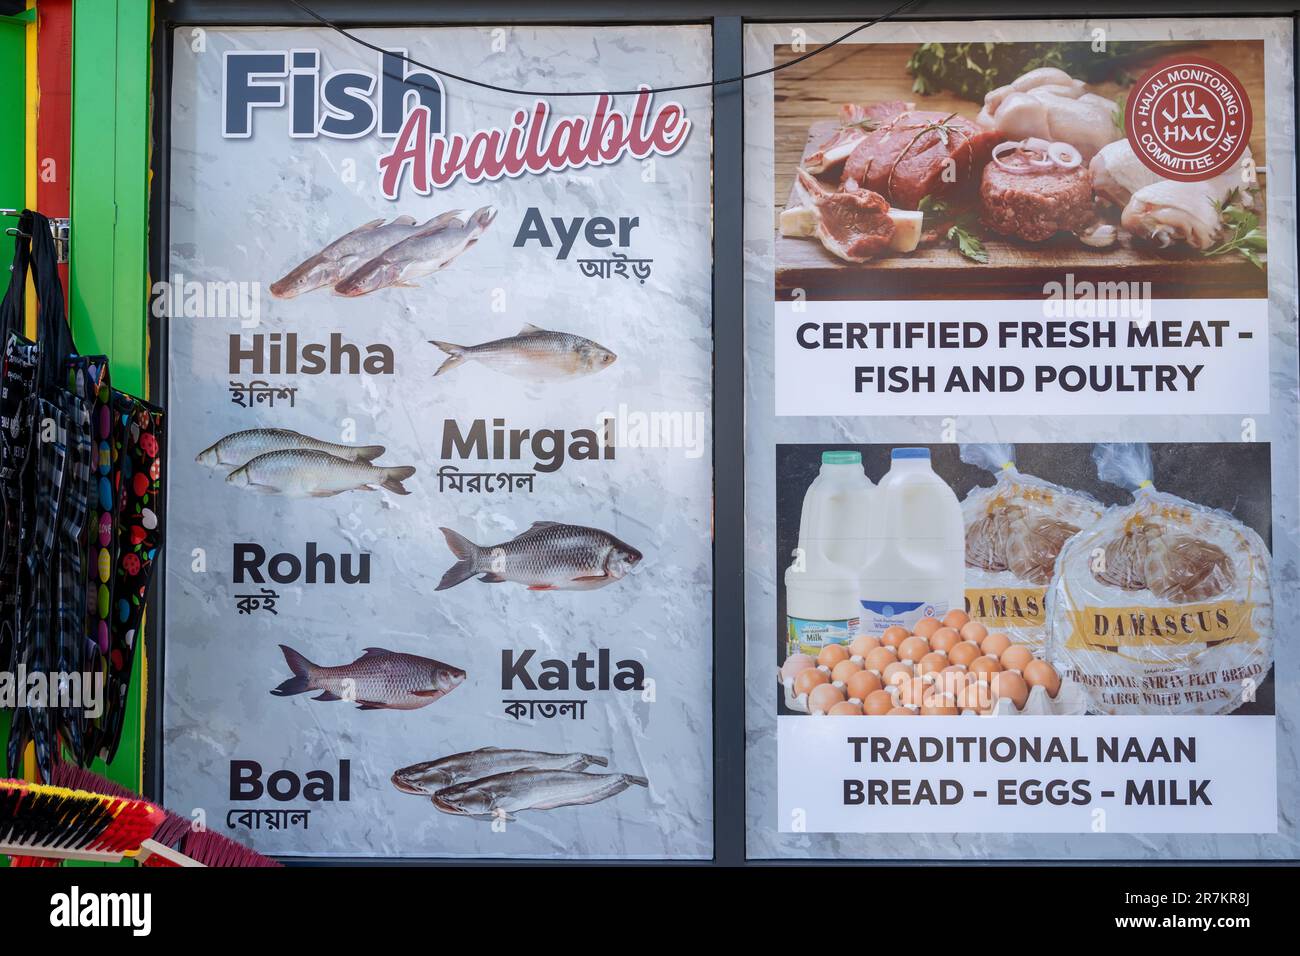 Ein Schild vor einem Geschäft zeigt die verfügbaren Fische - Ayer, Hilsha, Mirgal, Rohu, Katla und Boal, Ebenso wie Halalfleisch. Newcastle upon Tyne, Großbritannien. Stockfoto